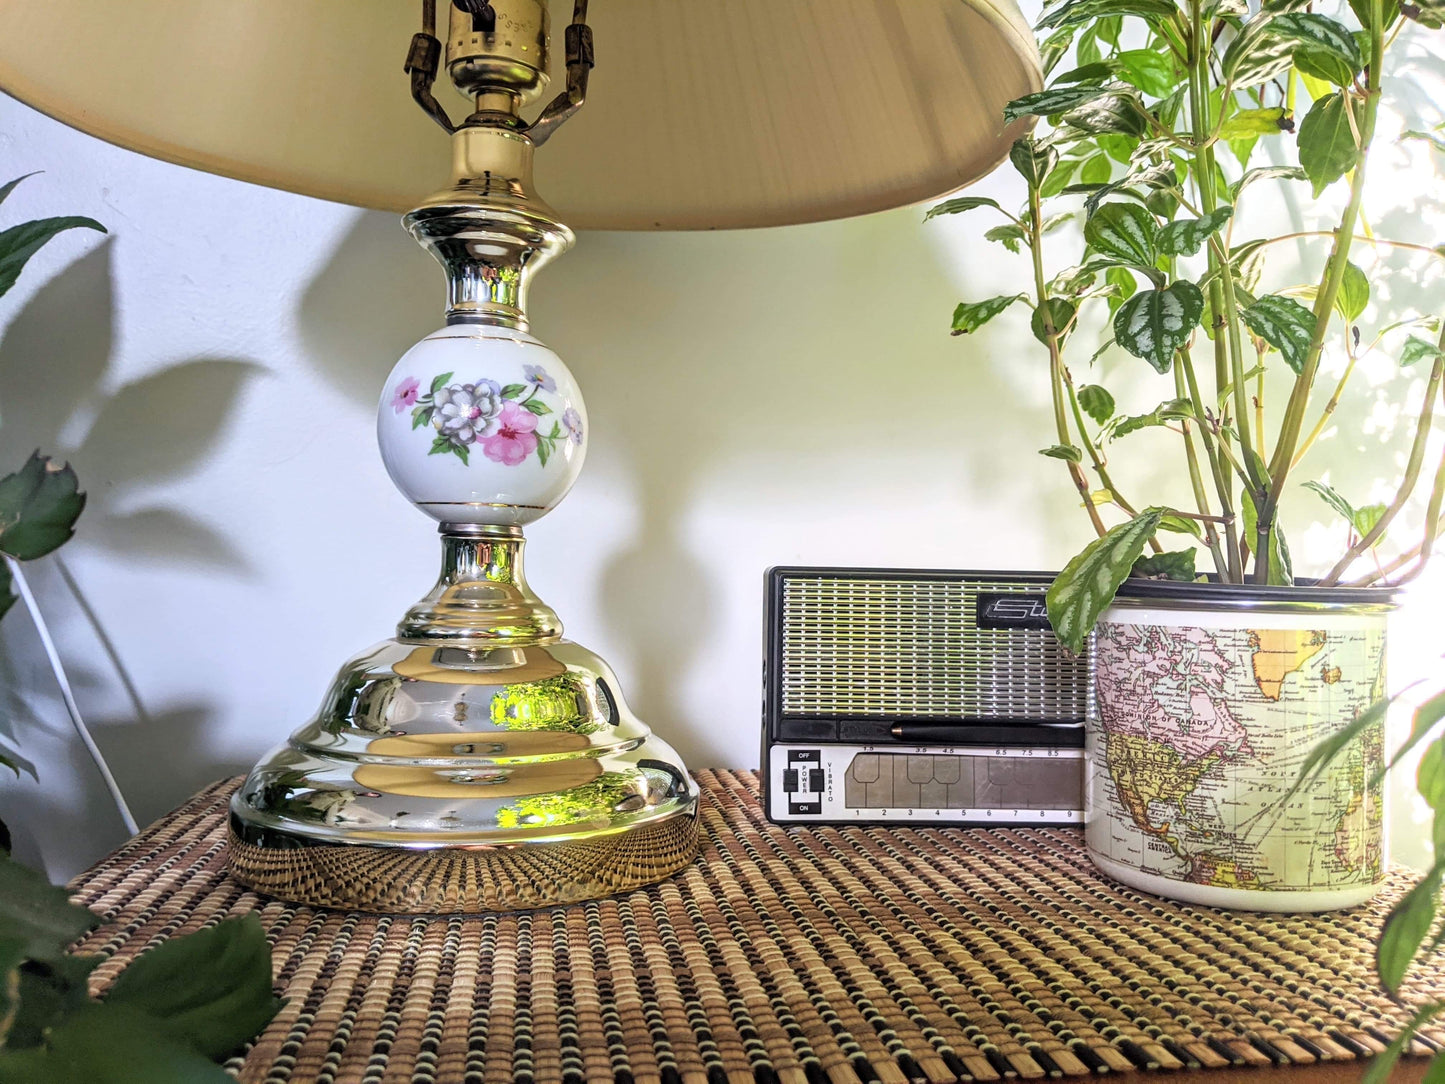 Vintage Retro Brass Lamp Floral Motif White Porcelain Victoria BC Secondhand thrift antique